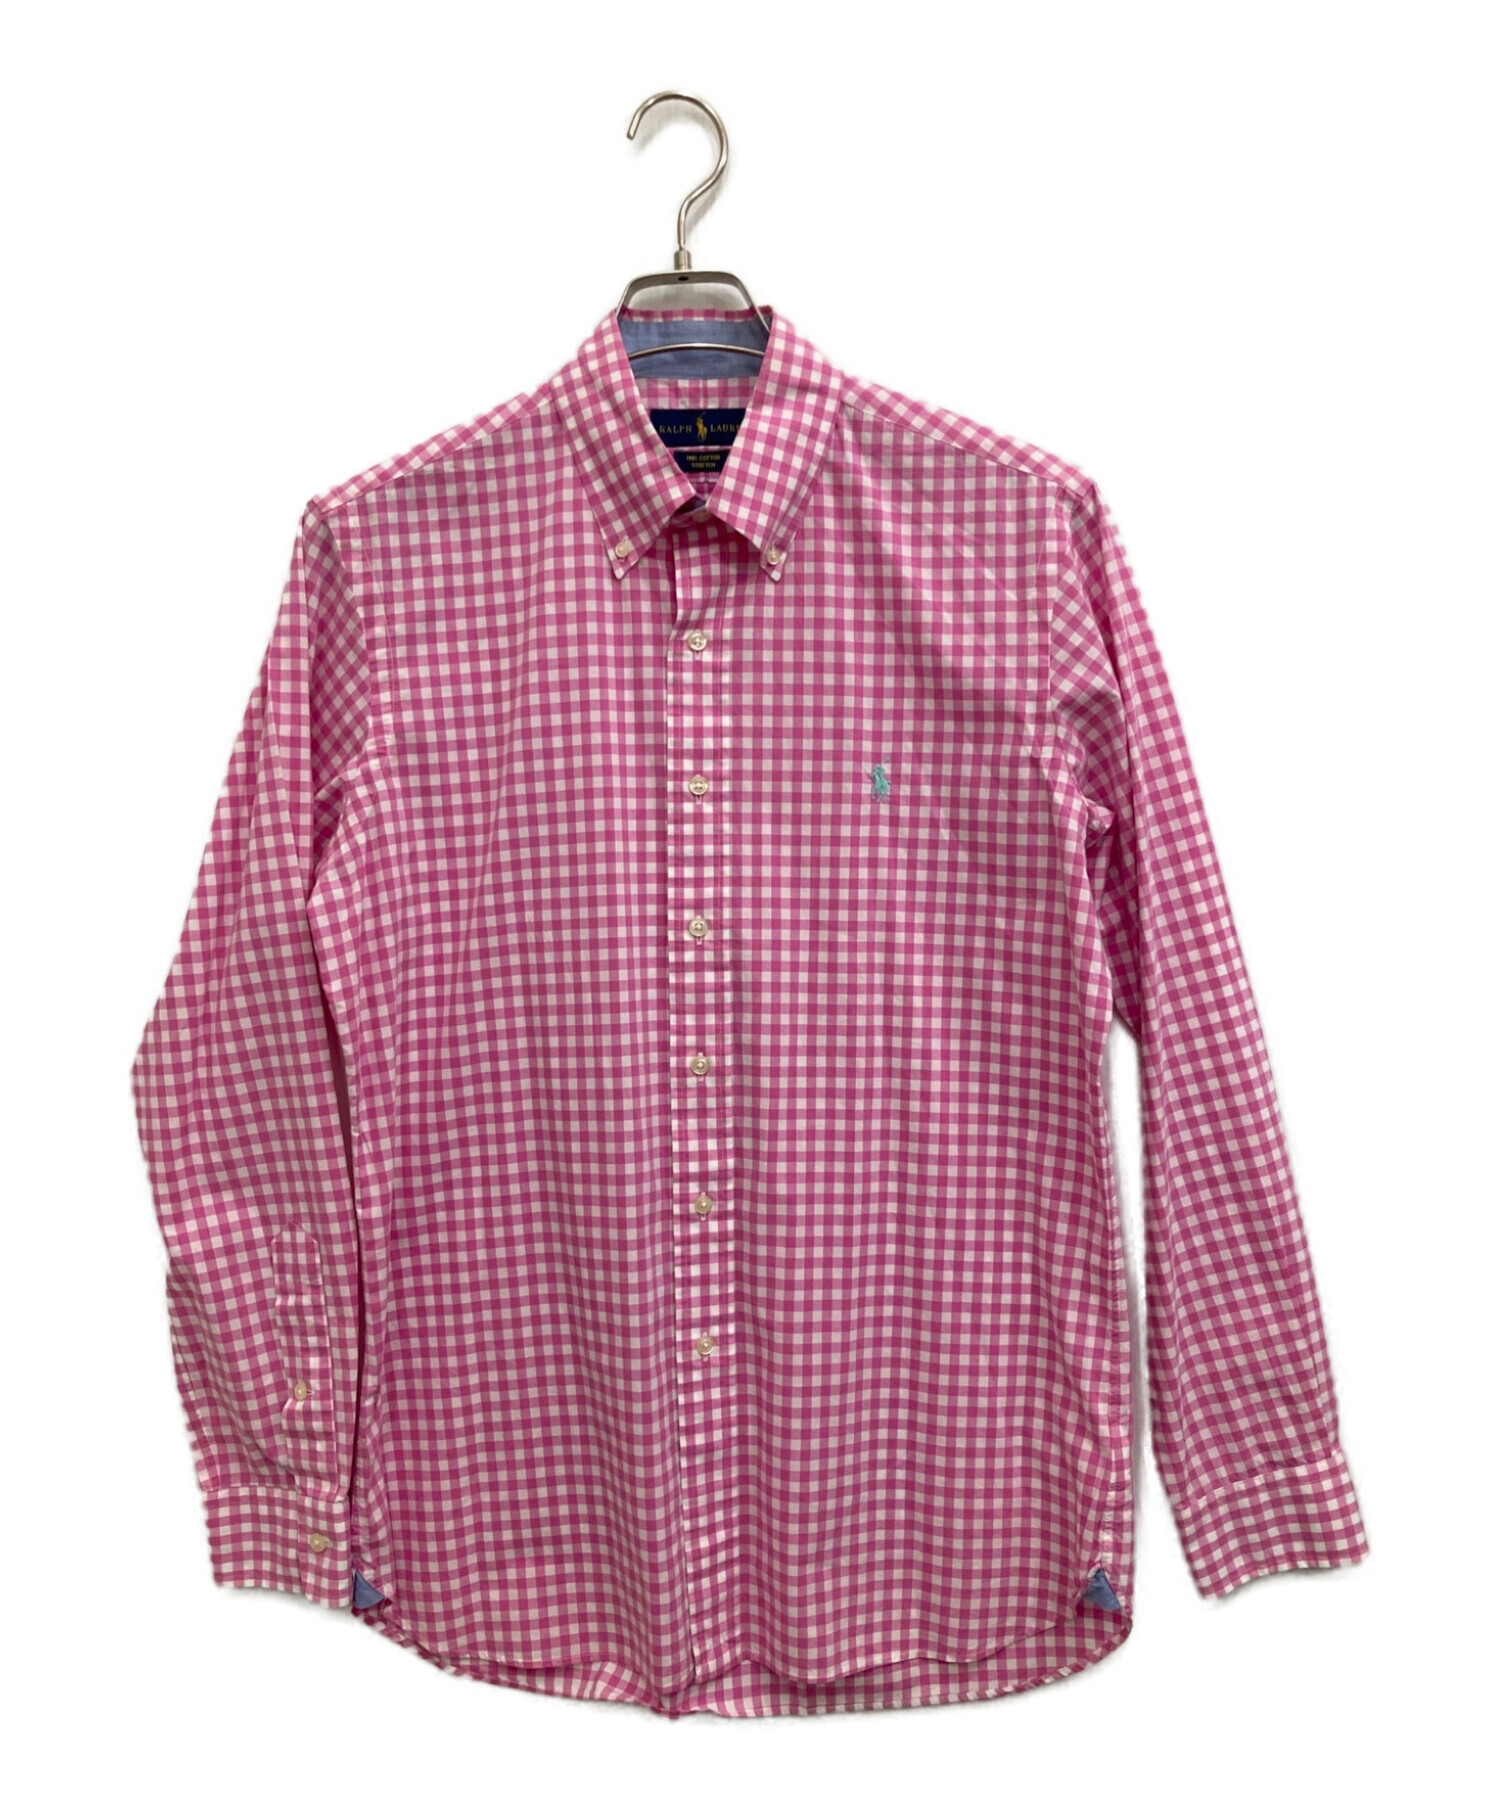 POLO RALPH LAUREN (ポロ・ラルフローレン) ギンガムチェックシャツ ピンク サイズ:S